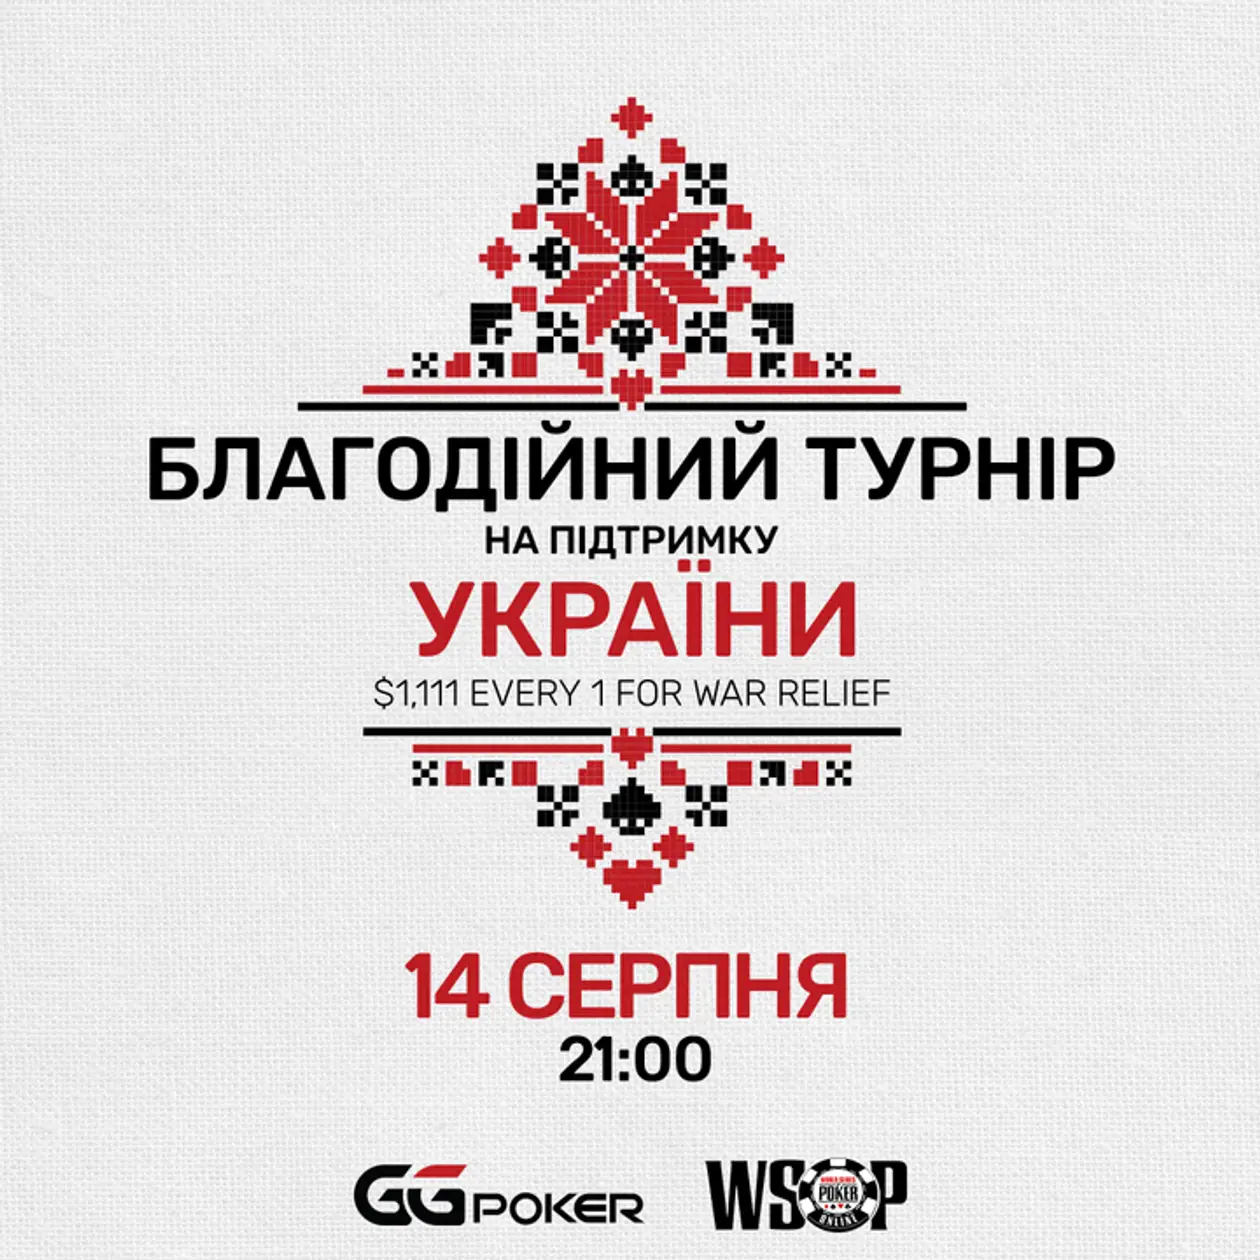 Благодійний турнір на підтримку України вже цієї неділі!